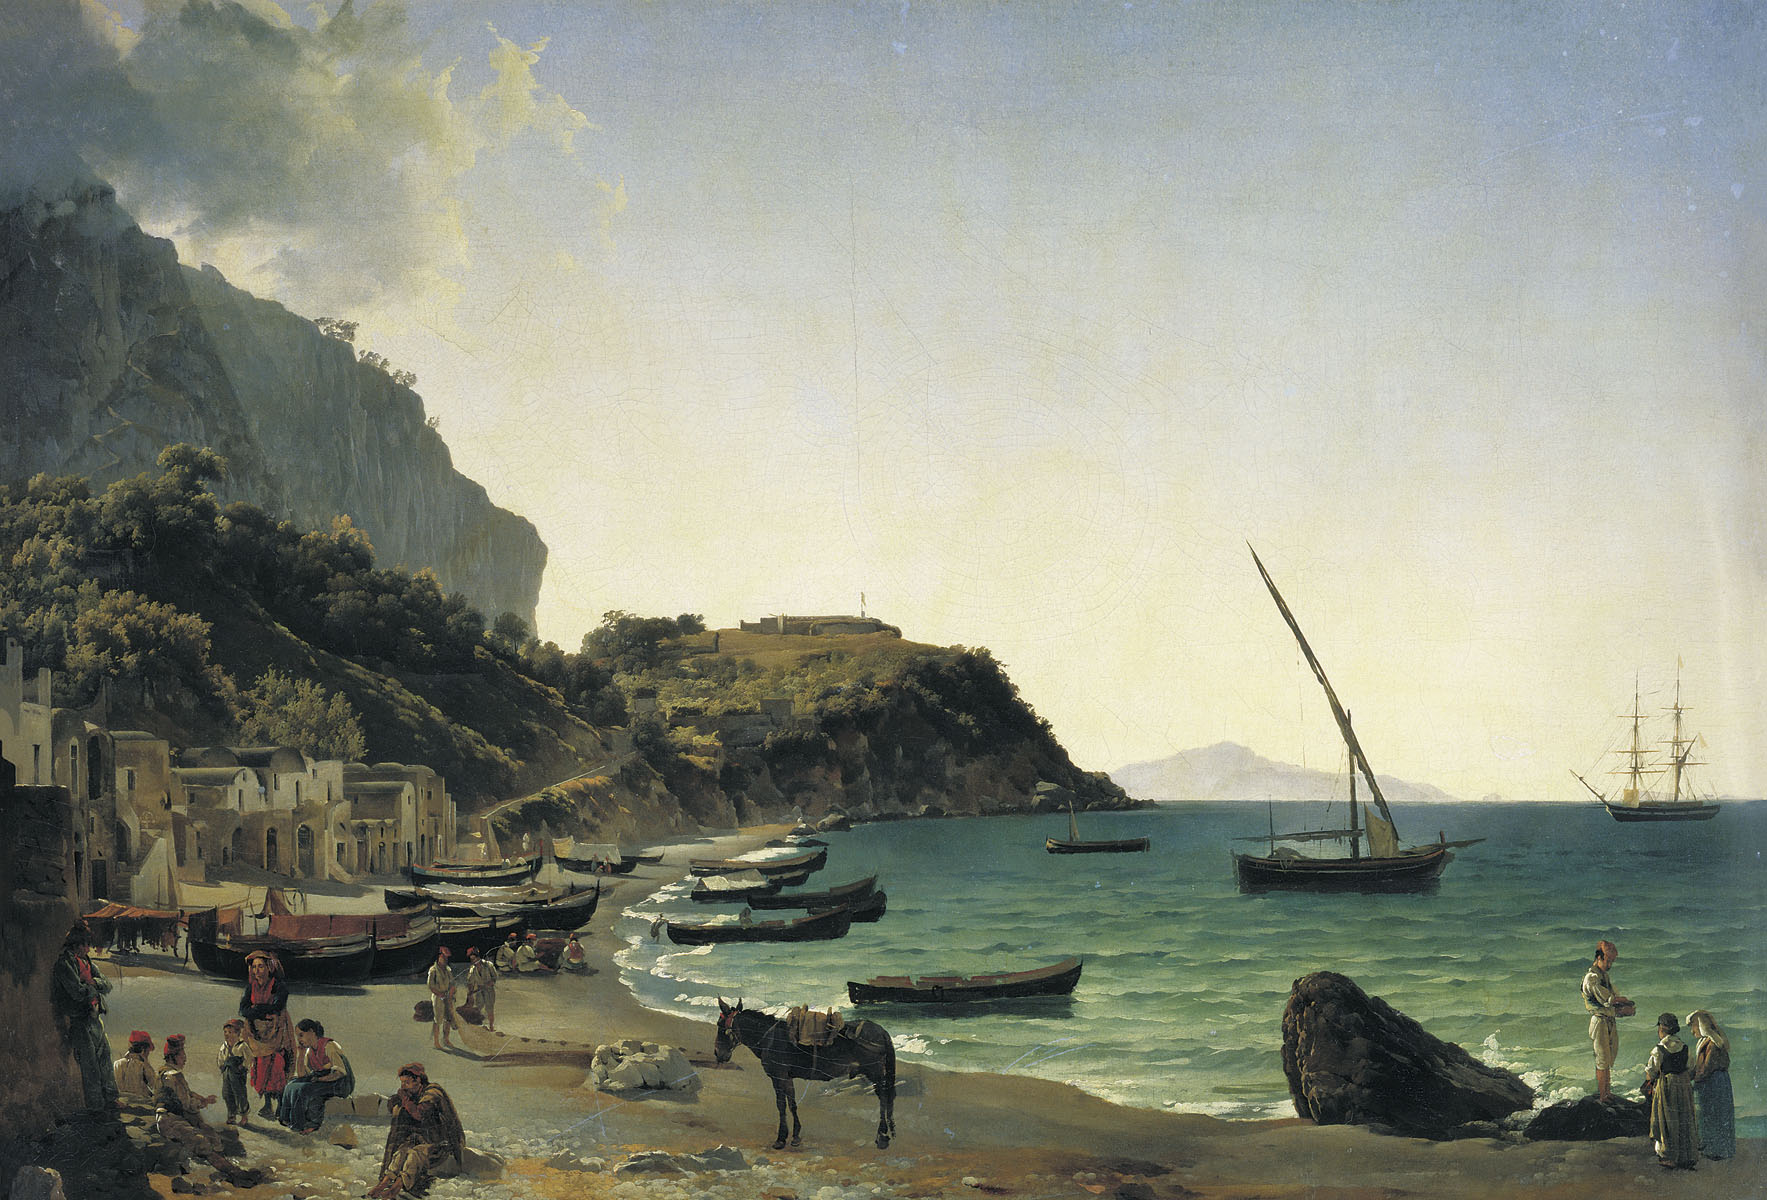 Сильвестр Феодосиевич Щедрин. "Большая гавань на острове Капри". 1828.